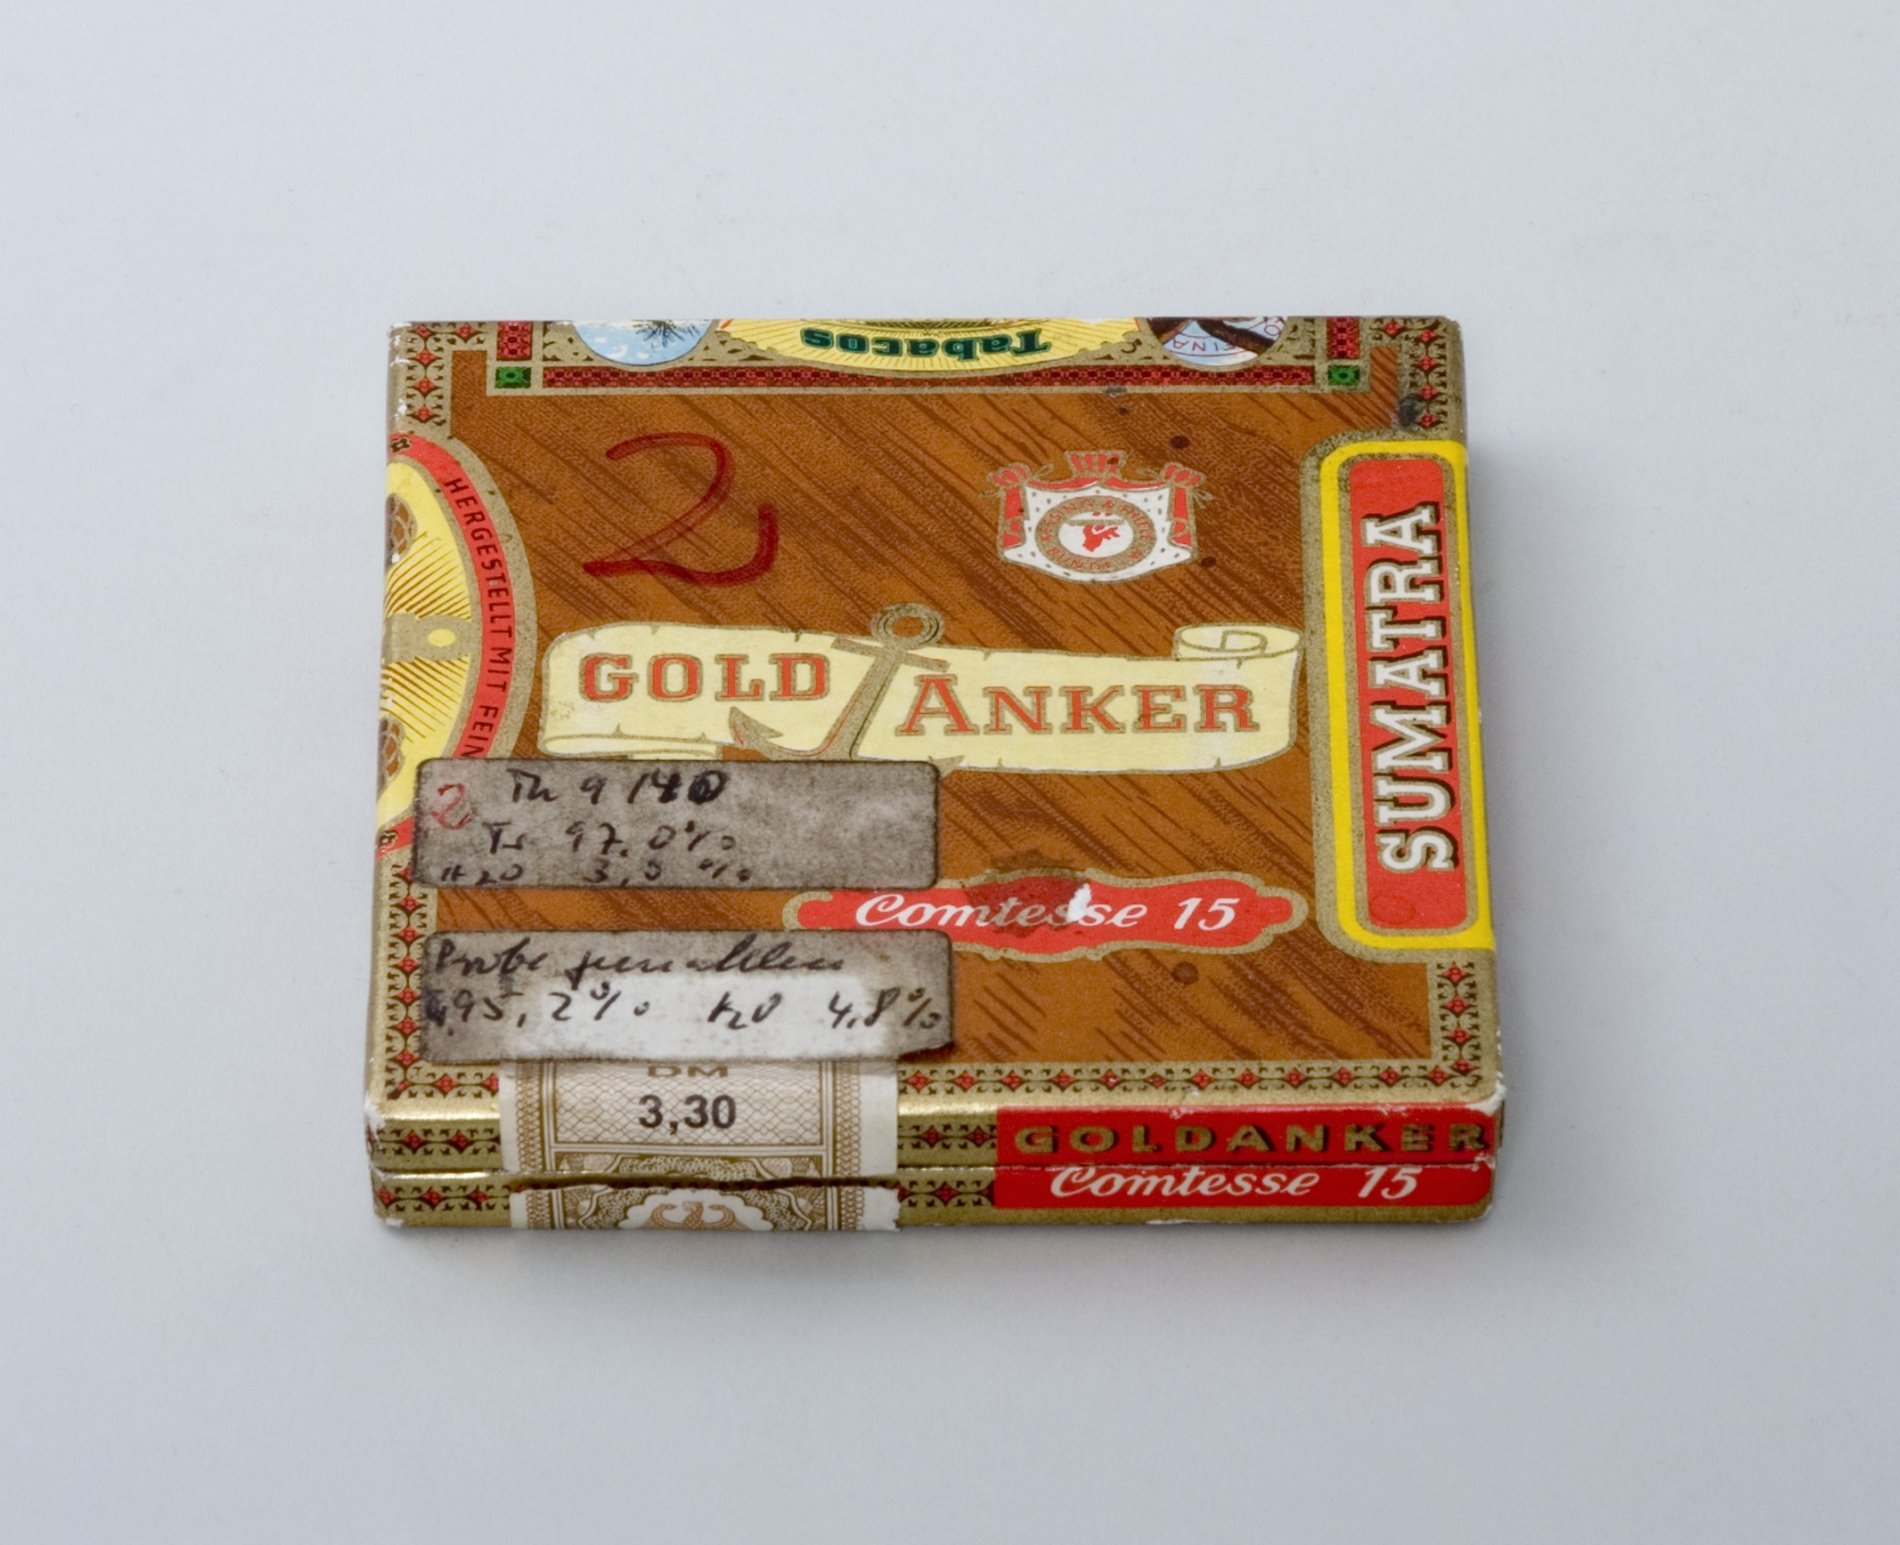 Zigarilloschachtel "Gold Anker" (Stiftung Domäne Dahlem - Landgut und Museum, Weiternutzung nur mit Genehmigung des Museums CC BY-NC-SA)